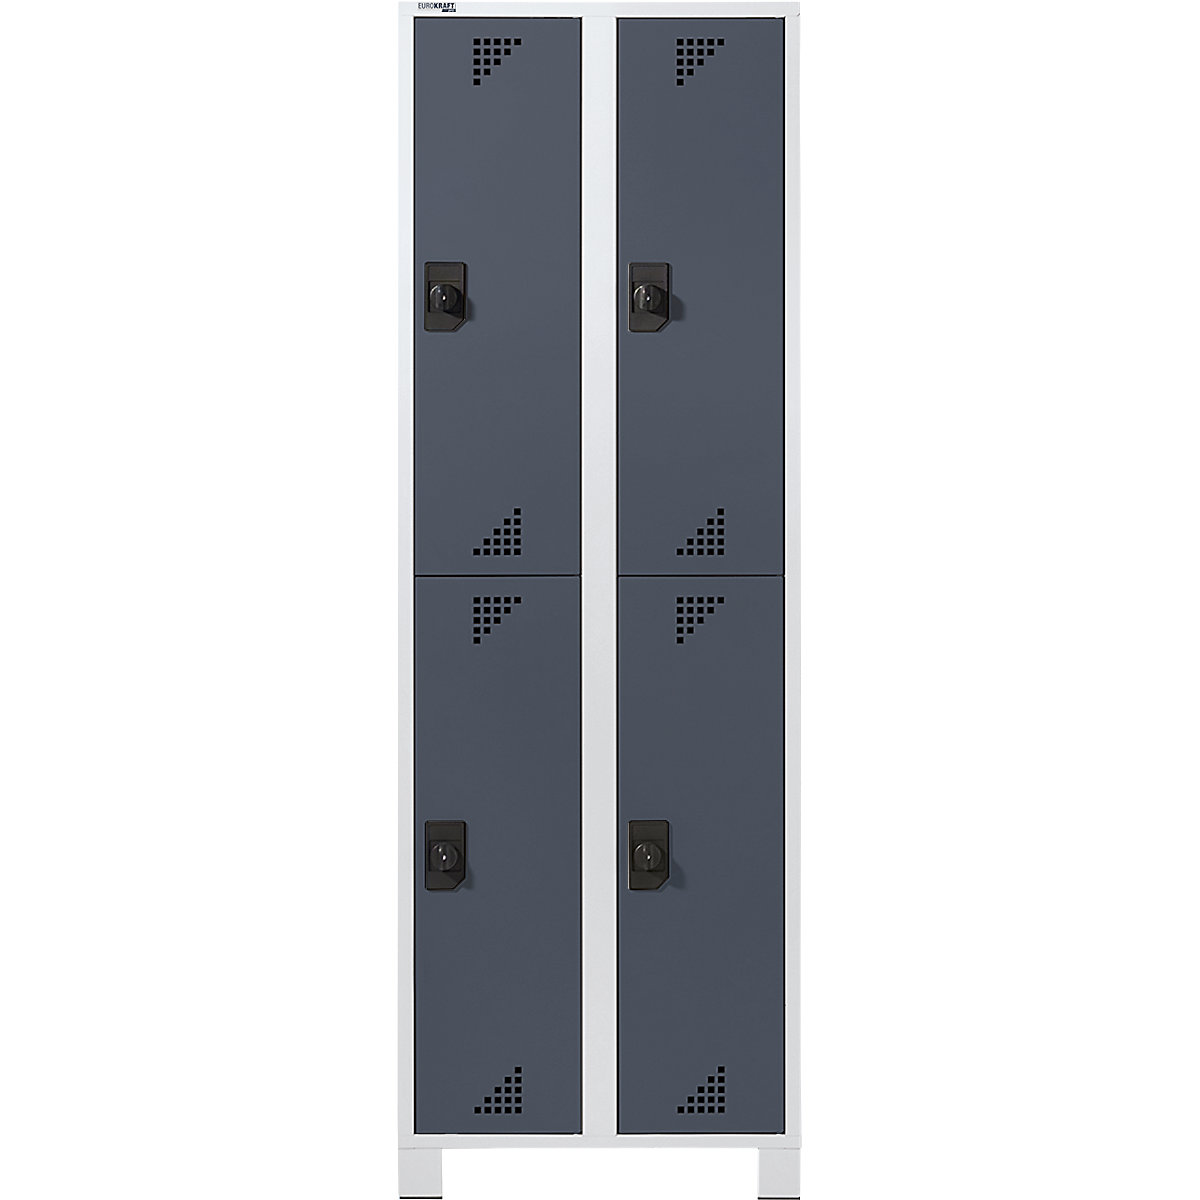 Öltözőszekrény félmagasságú rekeszekkel – eurokraft pro, ma x szé x mé 1800 x 600 x 500 mm, 4 fülke, világosszürke váz, antracitszürke ajtók-6